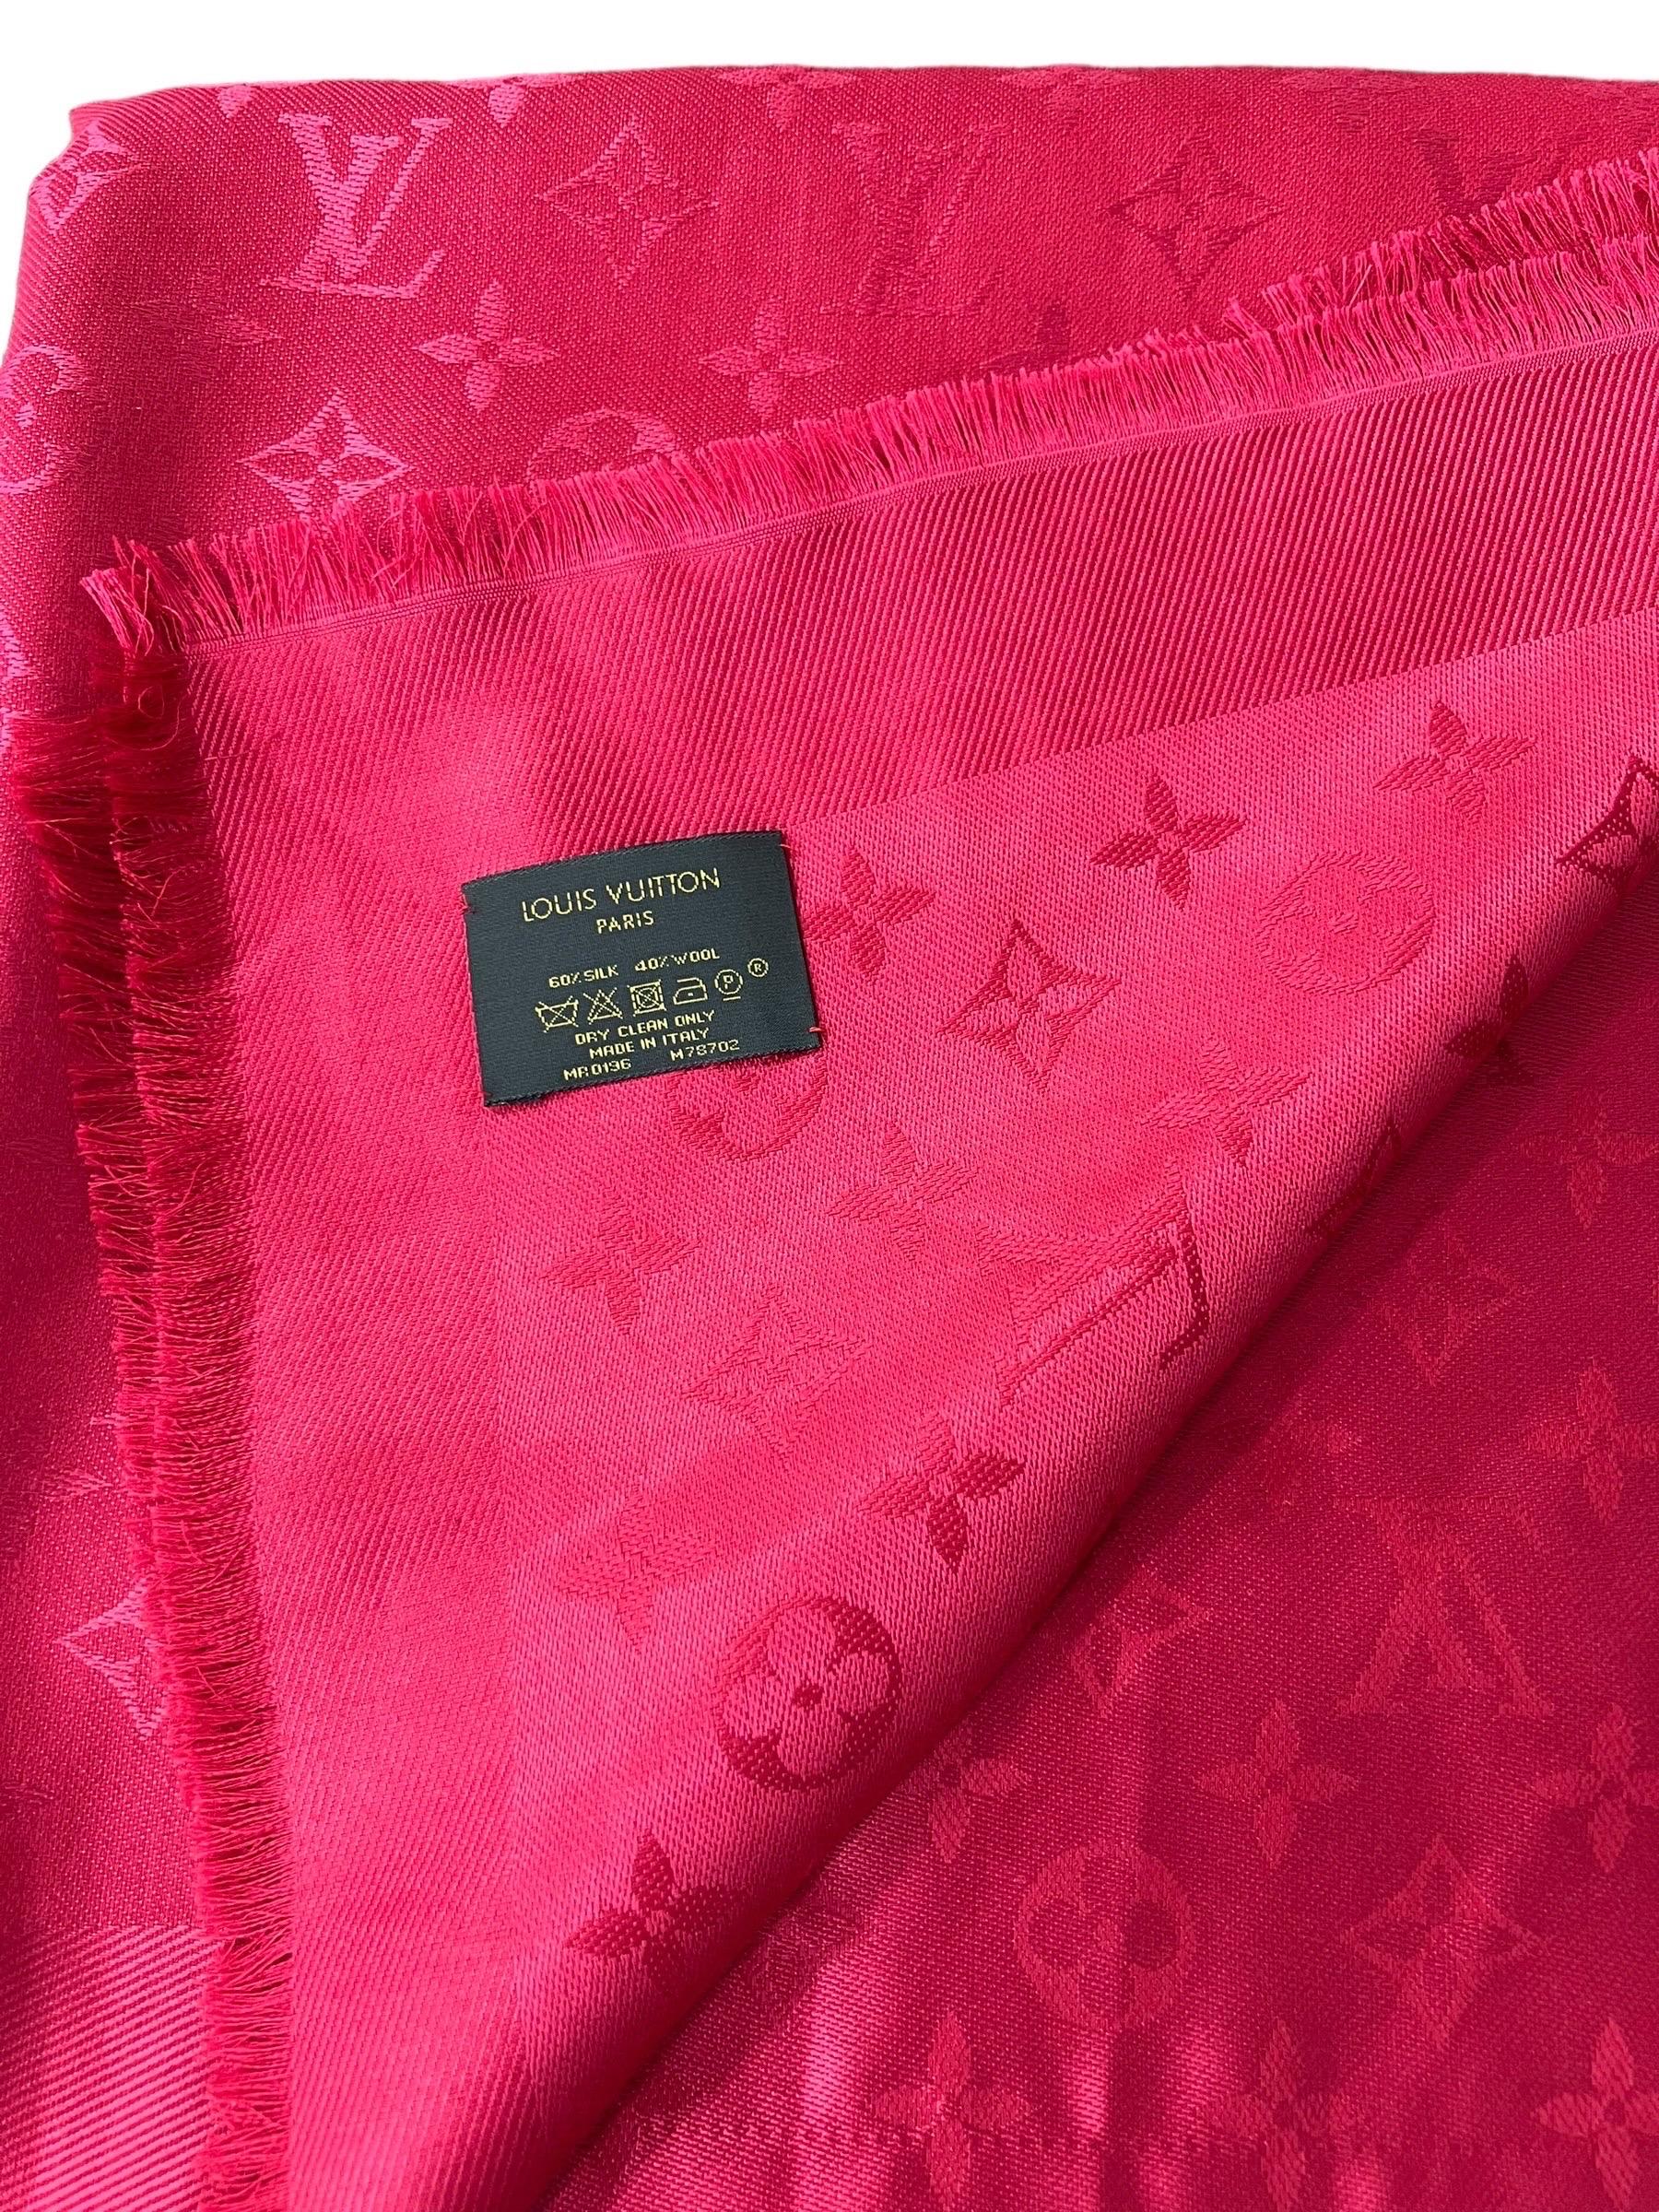 Louis Vuitton Scialle Monogram Rosso In Seta E Lana  For Sale 1